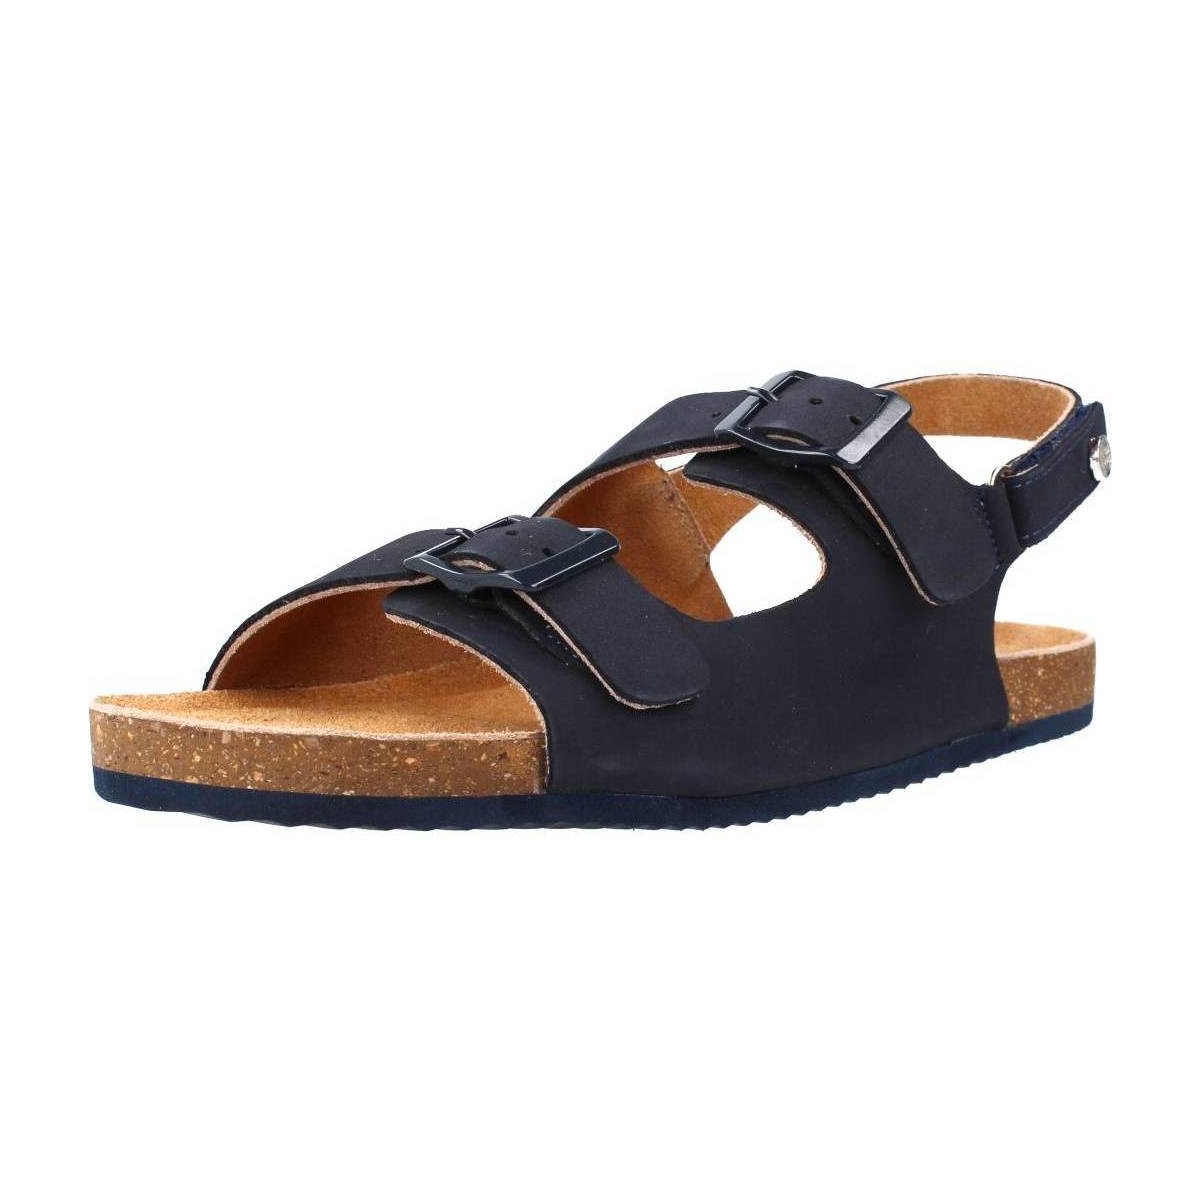 Schoenen Jongens Sandalen / Open schoenen Gioseppo MISINTO Blauw